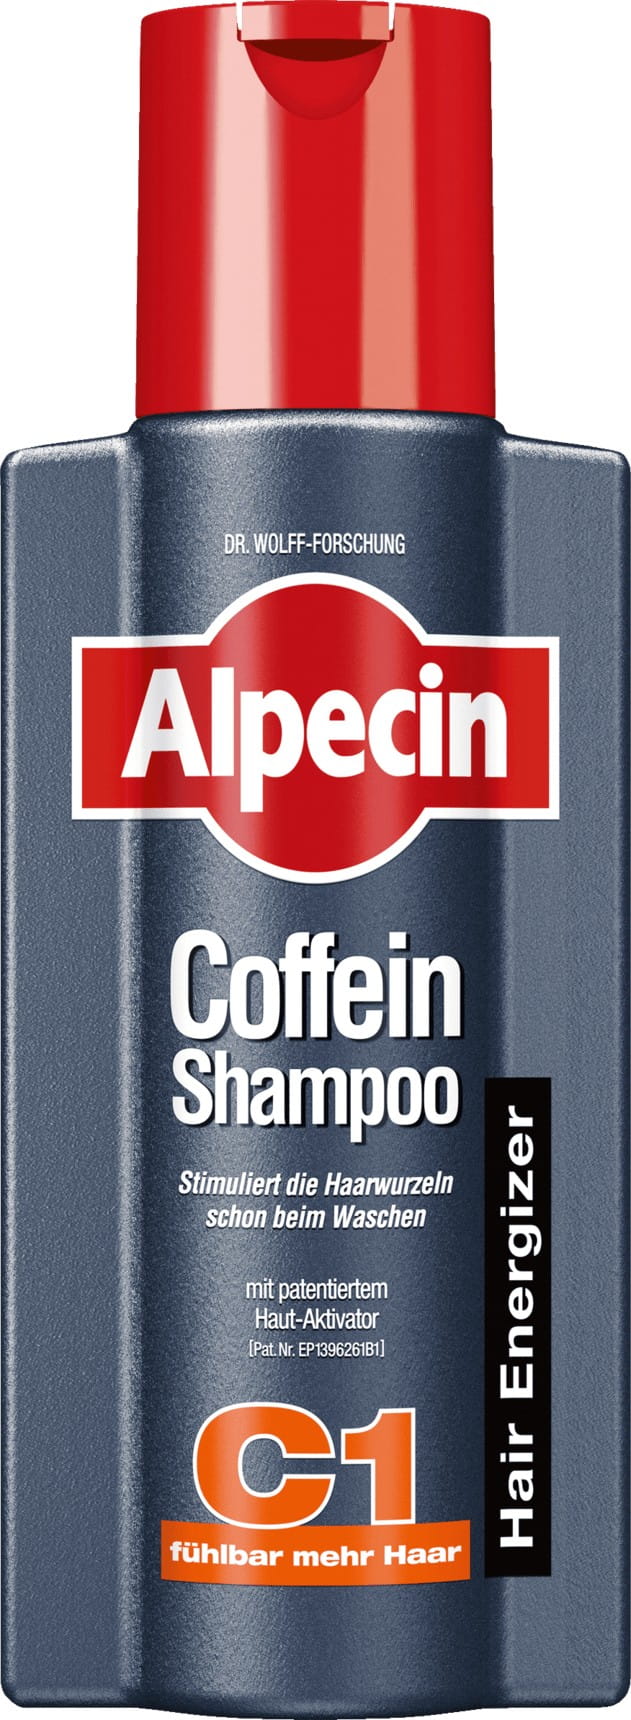 alpecin szampon kofeinowy stymulujący wzrost włosów